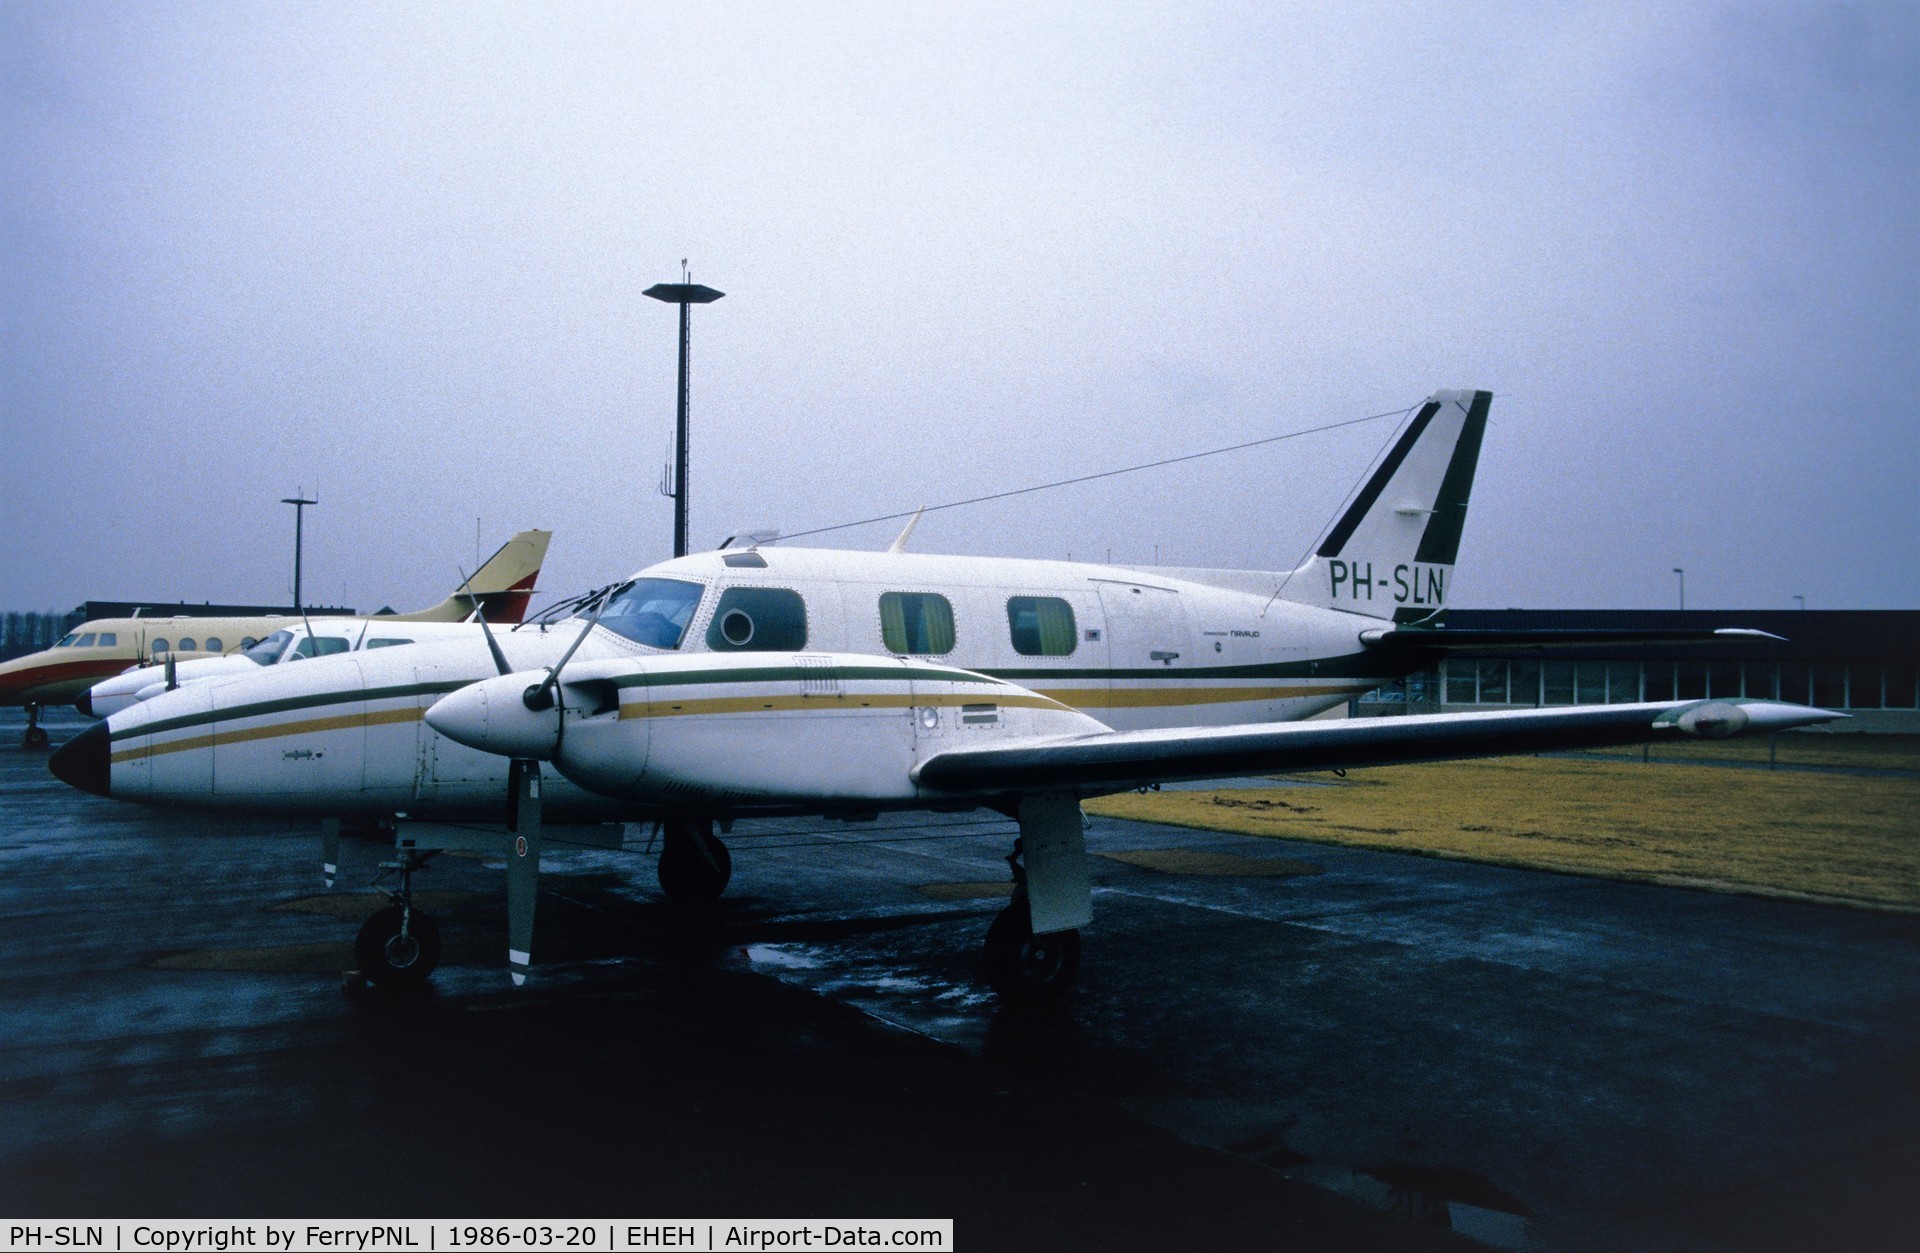 PH-SLN, 1975 Piper PA-31P-425 Pressurized Navajo Navajo C/N 31P-7530014, Shamrock BV PA31P